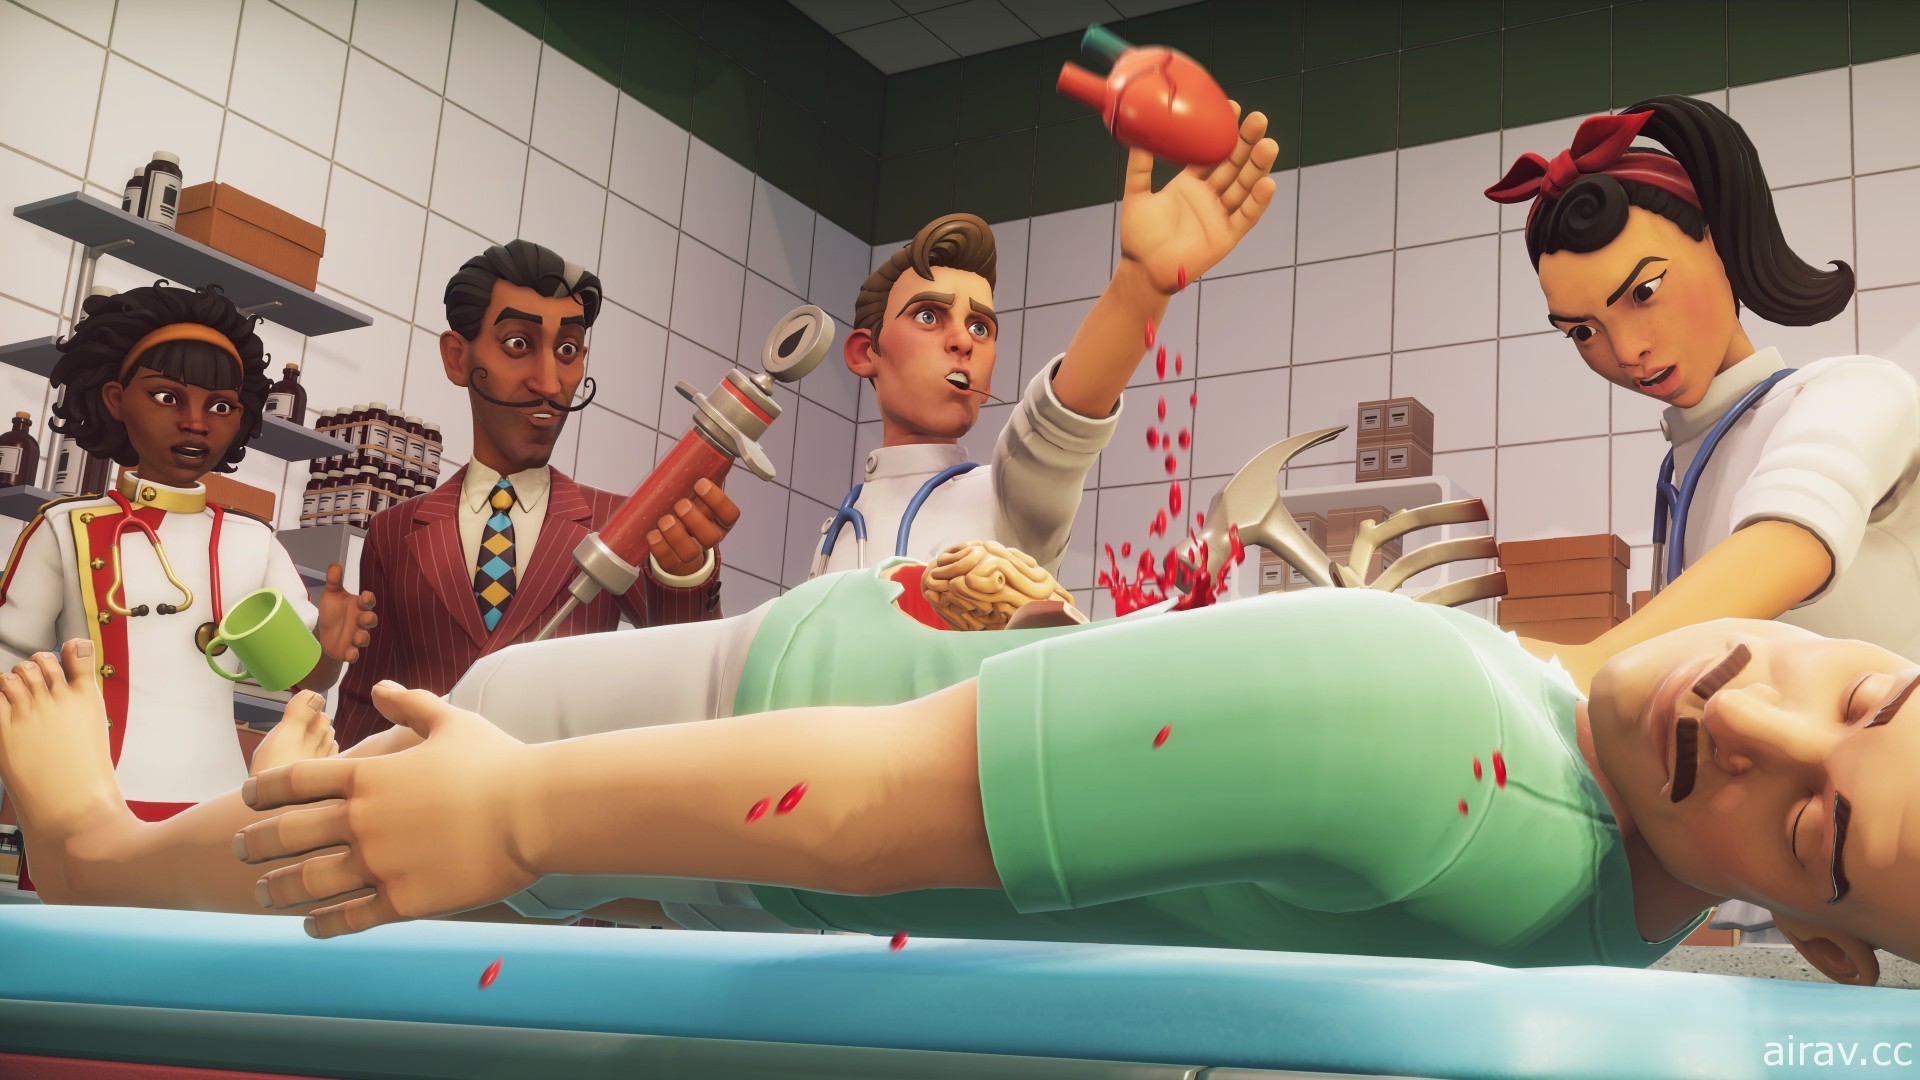 黑色幽默風格模擬遊戲《模擬外科手術 2》即日登上 Steam 平台